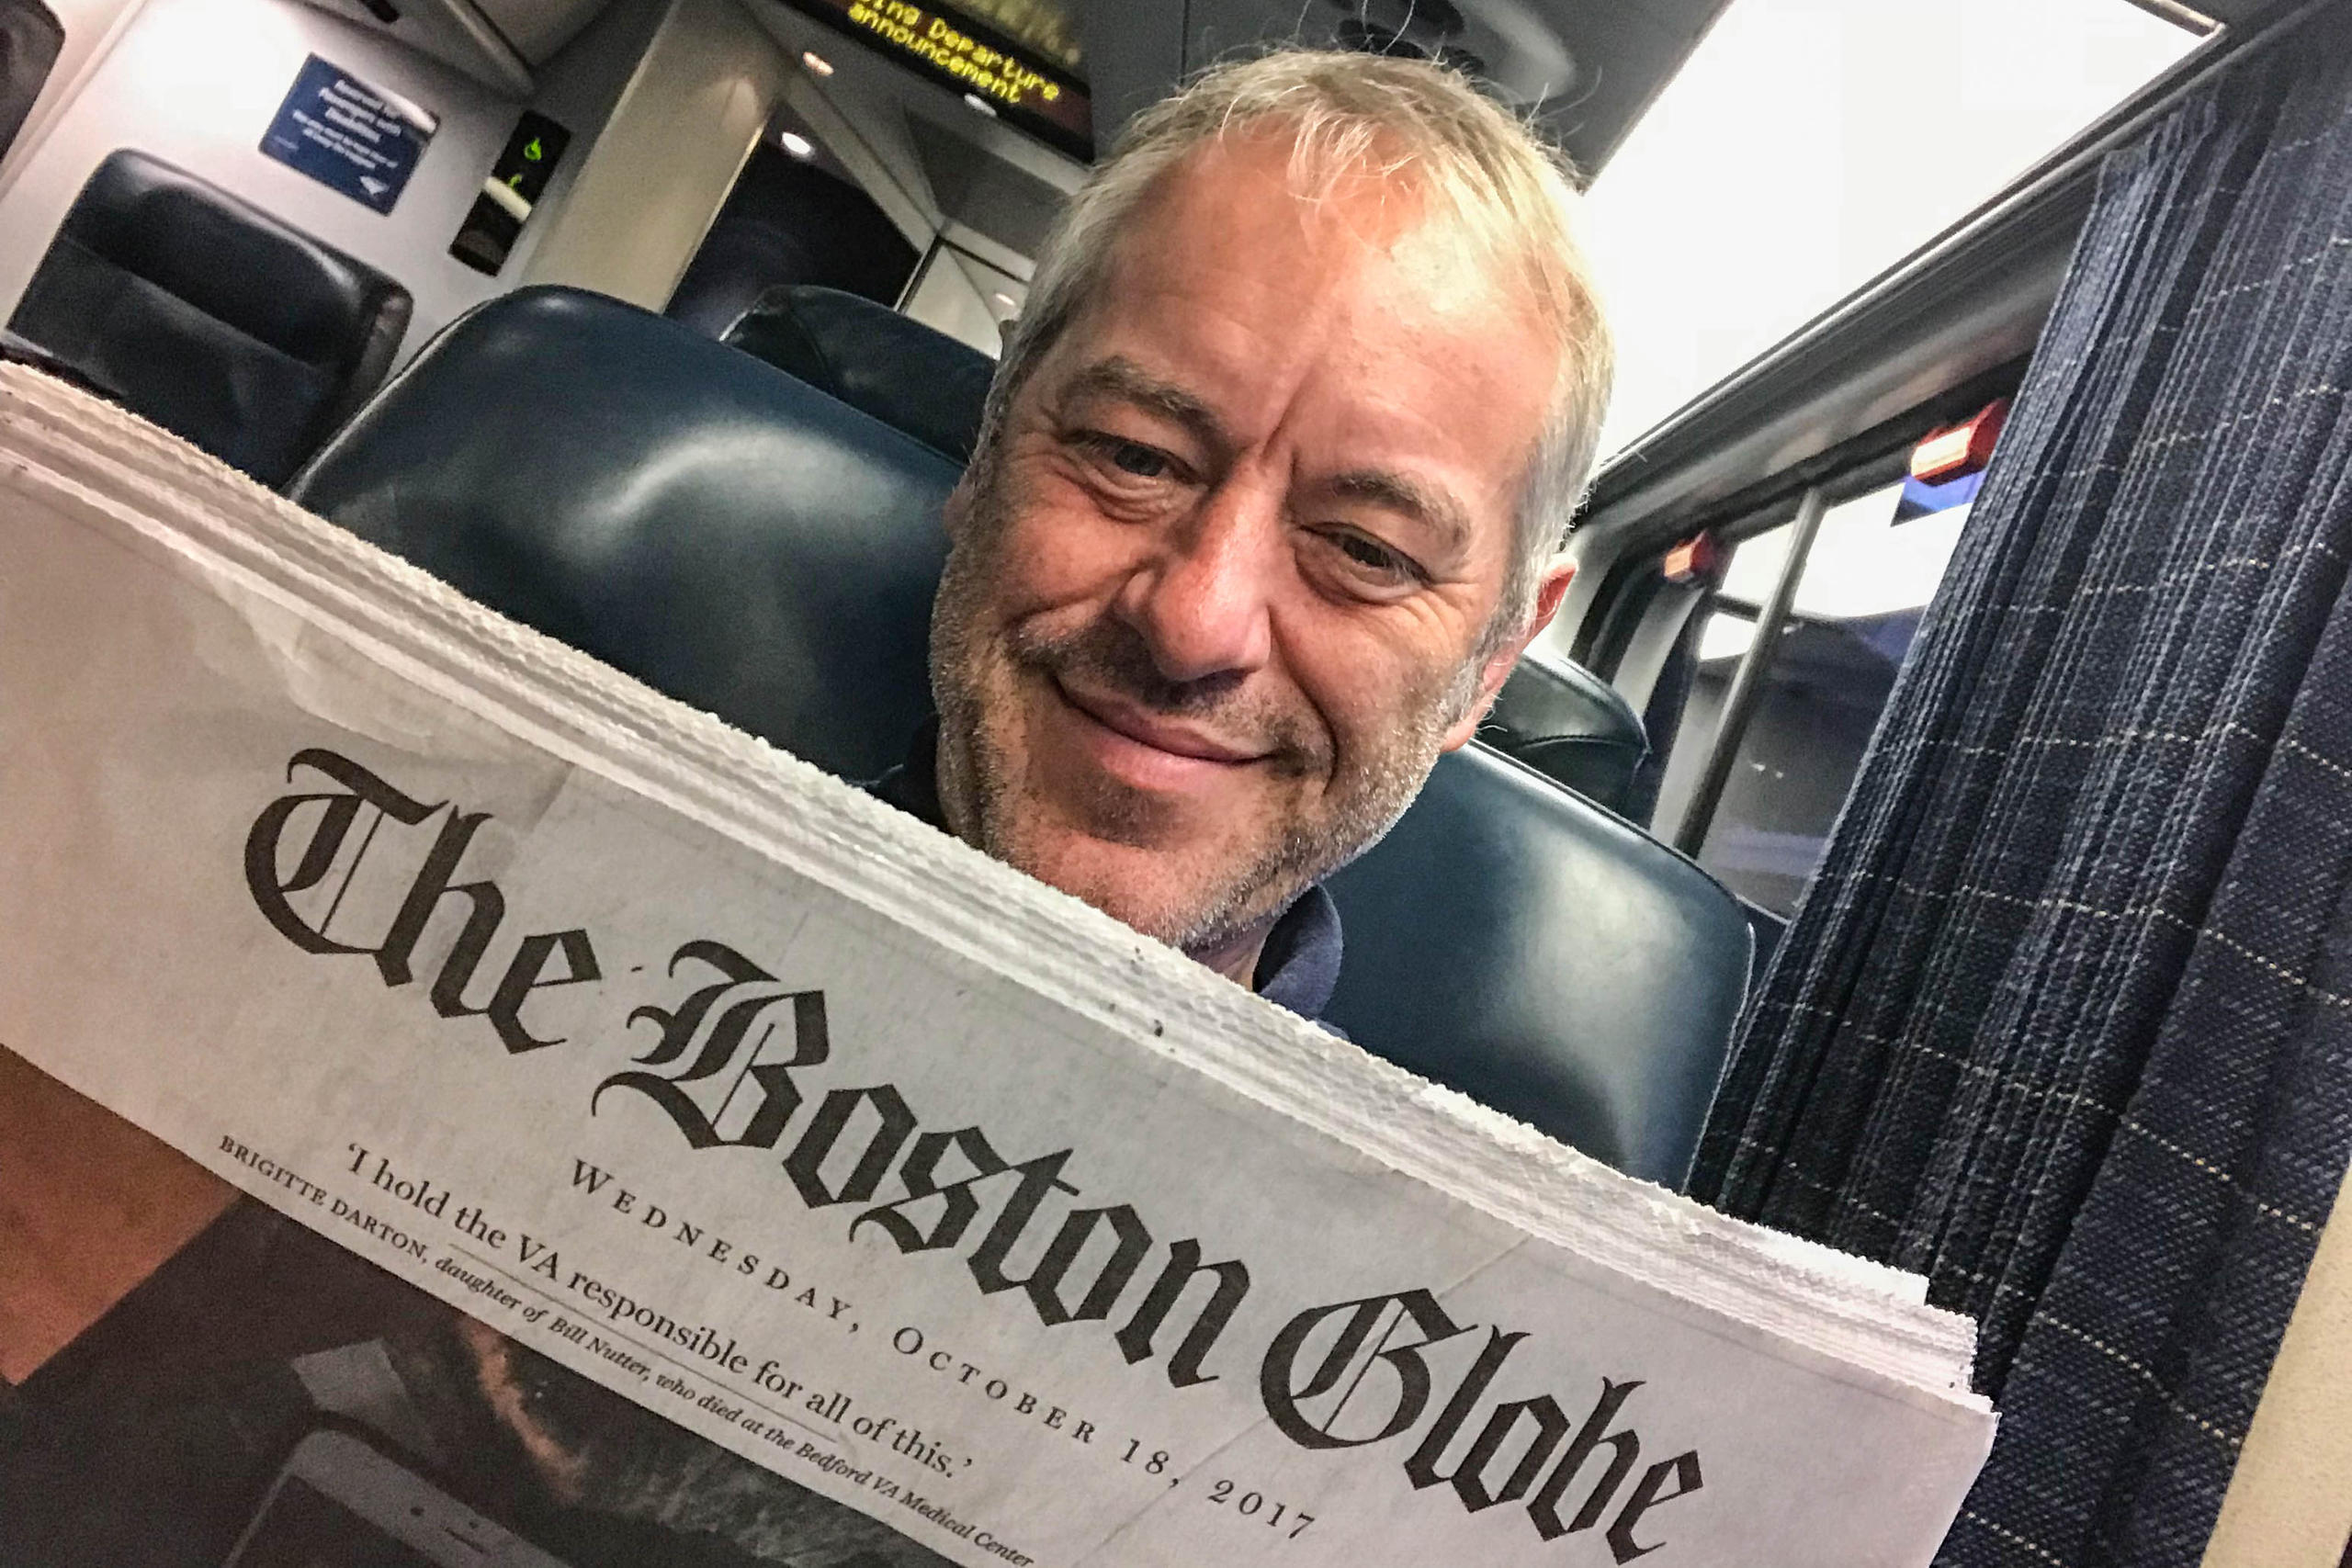 Bruno Kaufmann on a bus reading the Boston Globe